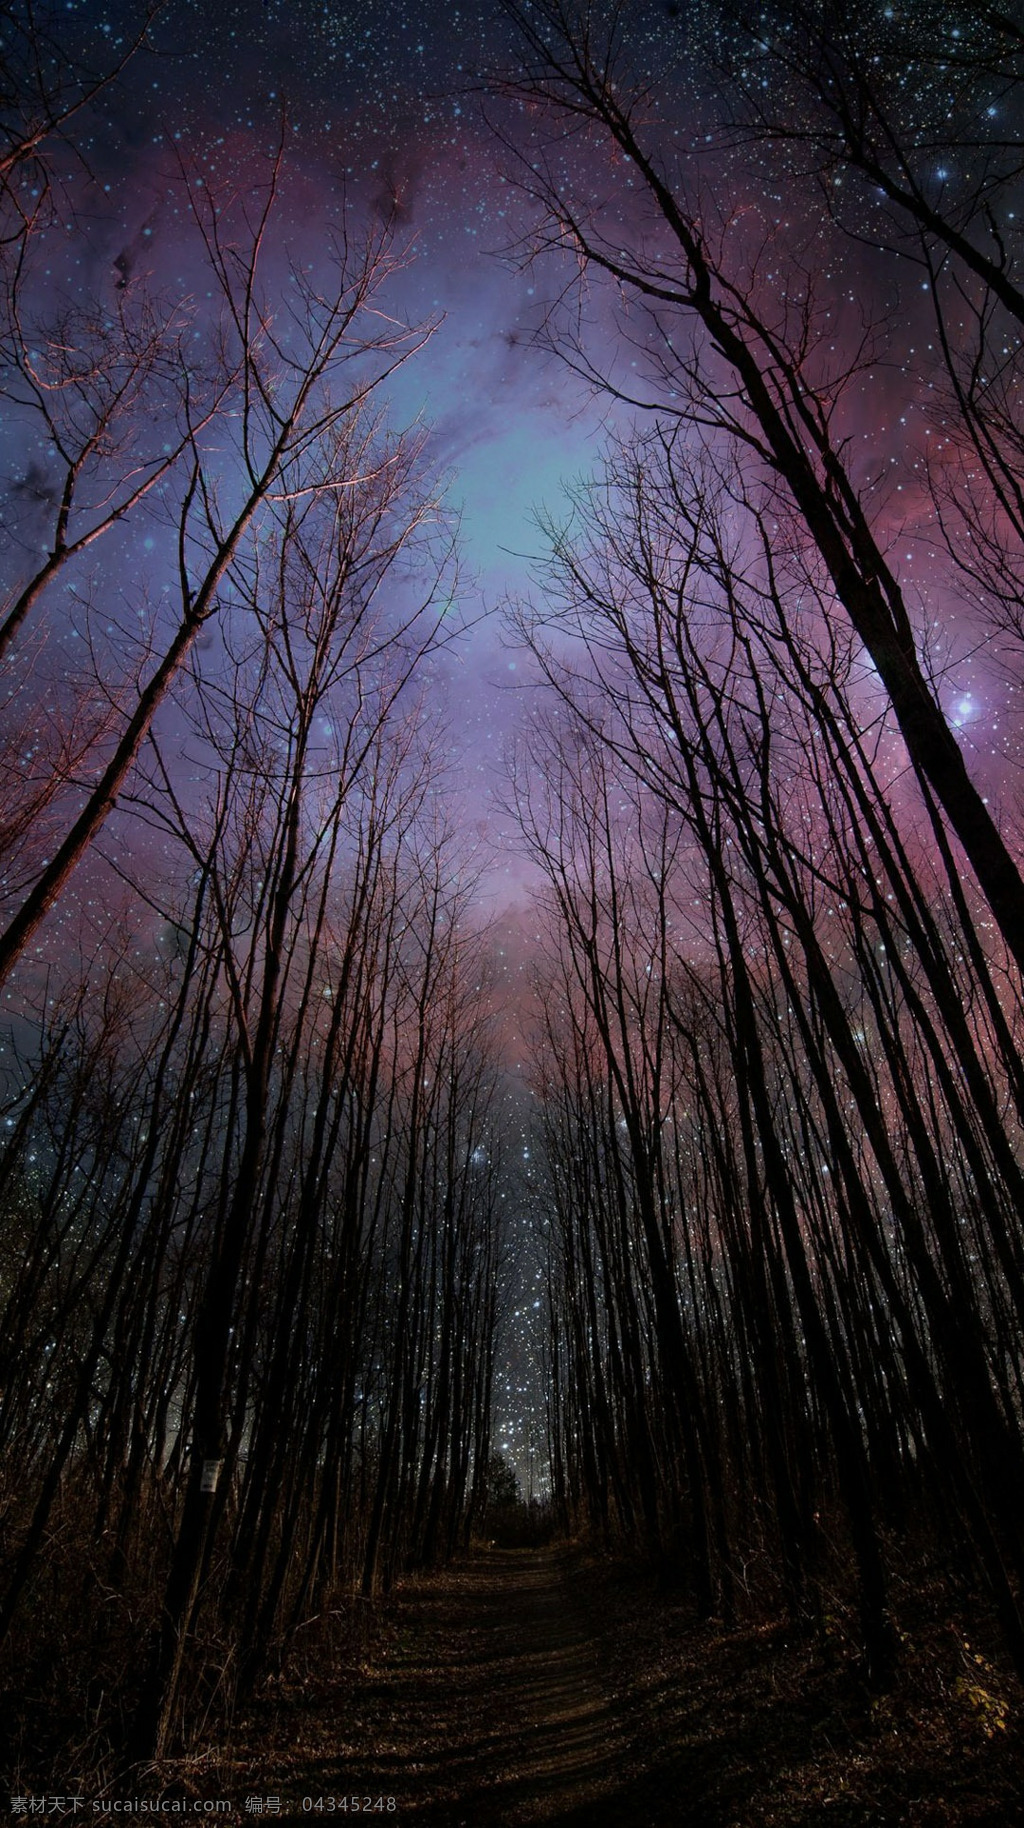 星空 指引 前进 道路 树林 小道 星星 风景图 自然景观 自然风光